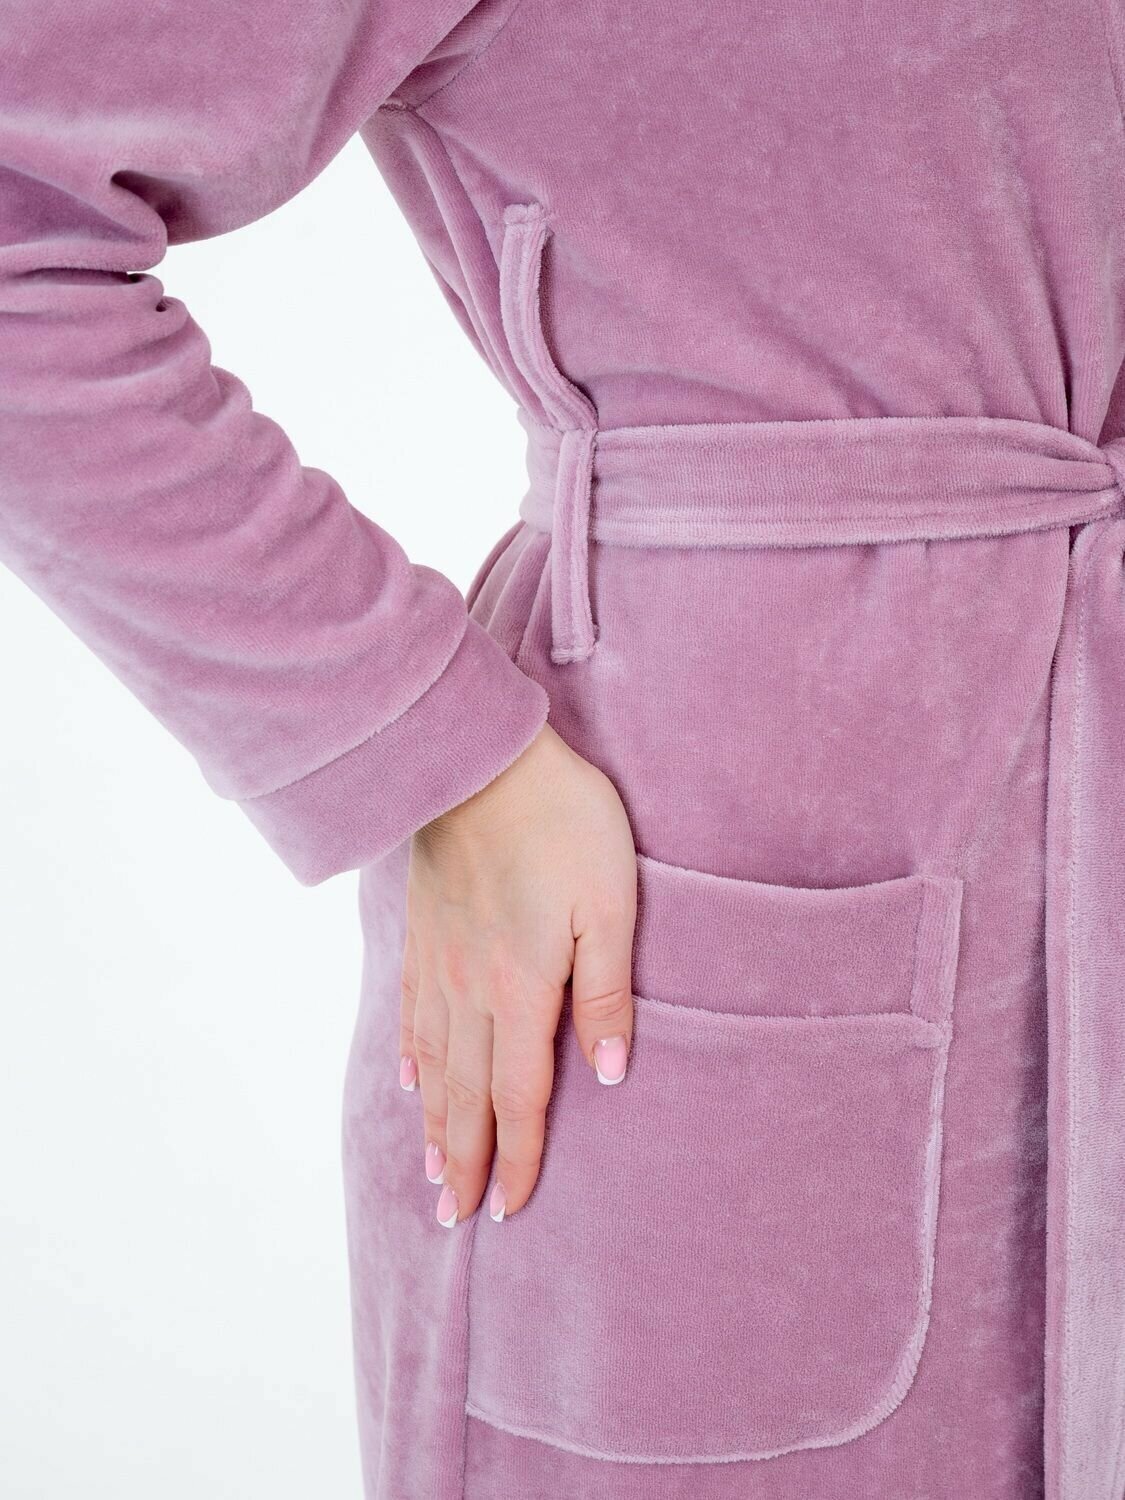 Женский велюровый халат с шалькой Росхалат, пастельно-лиловый. Размер 46-48 - фотография № 8